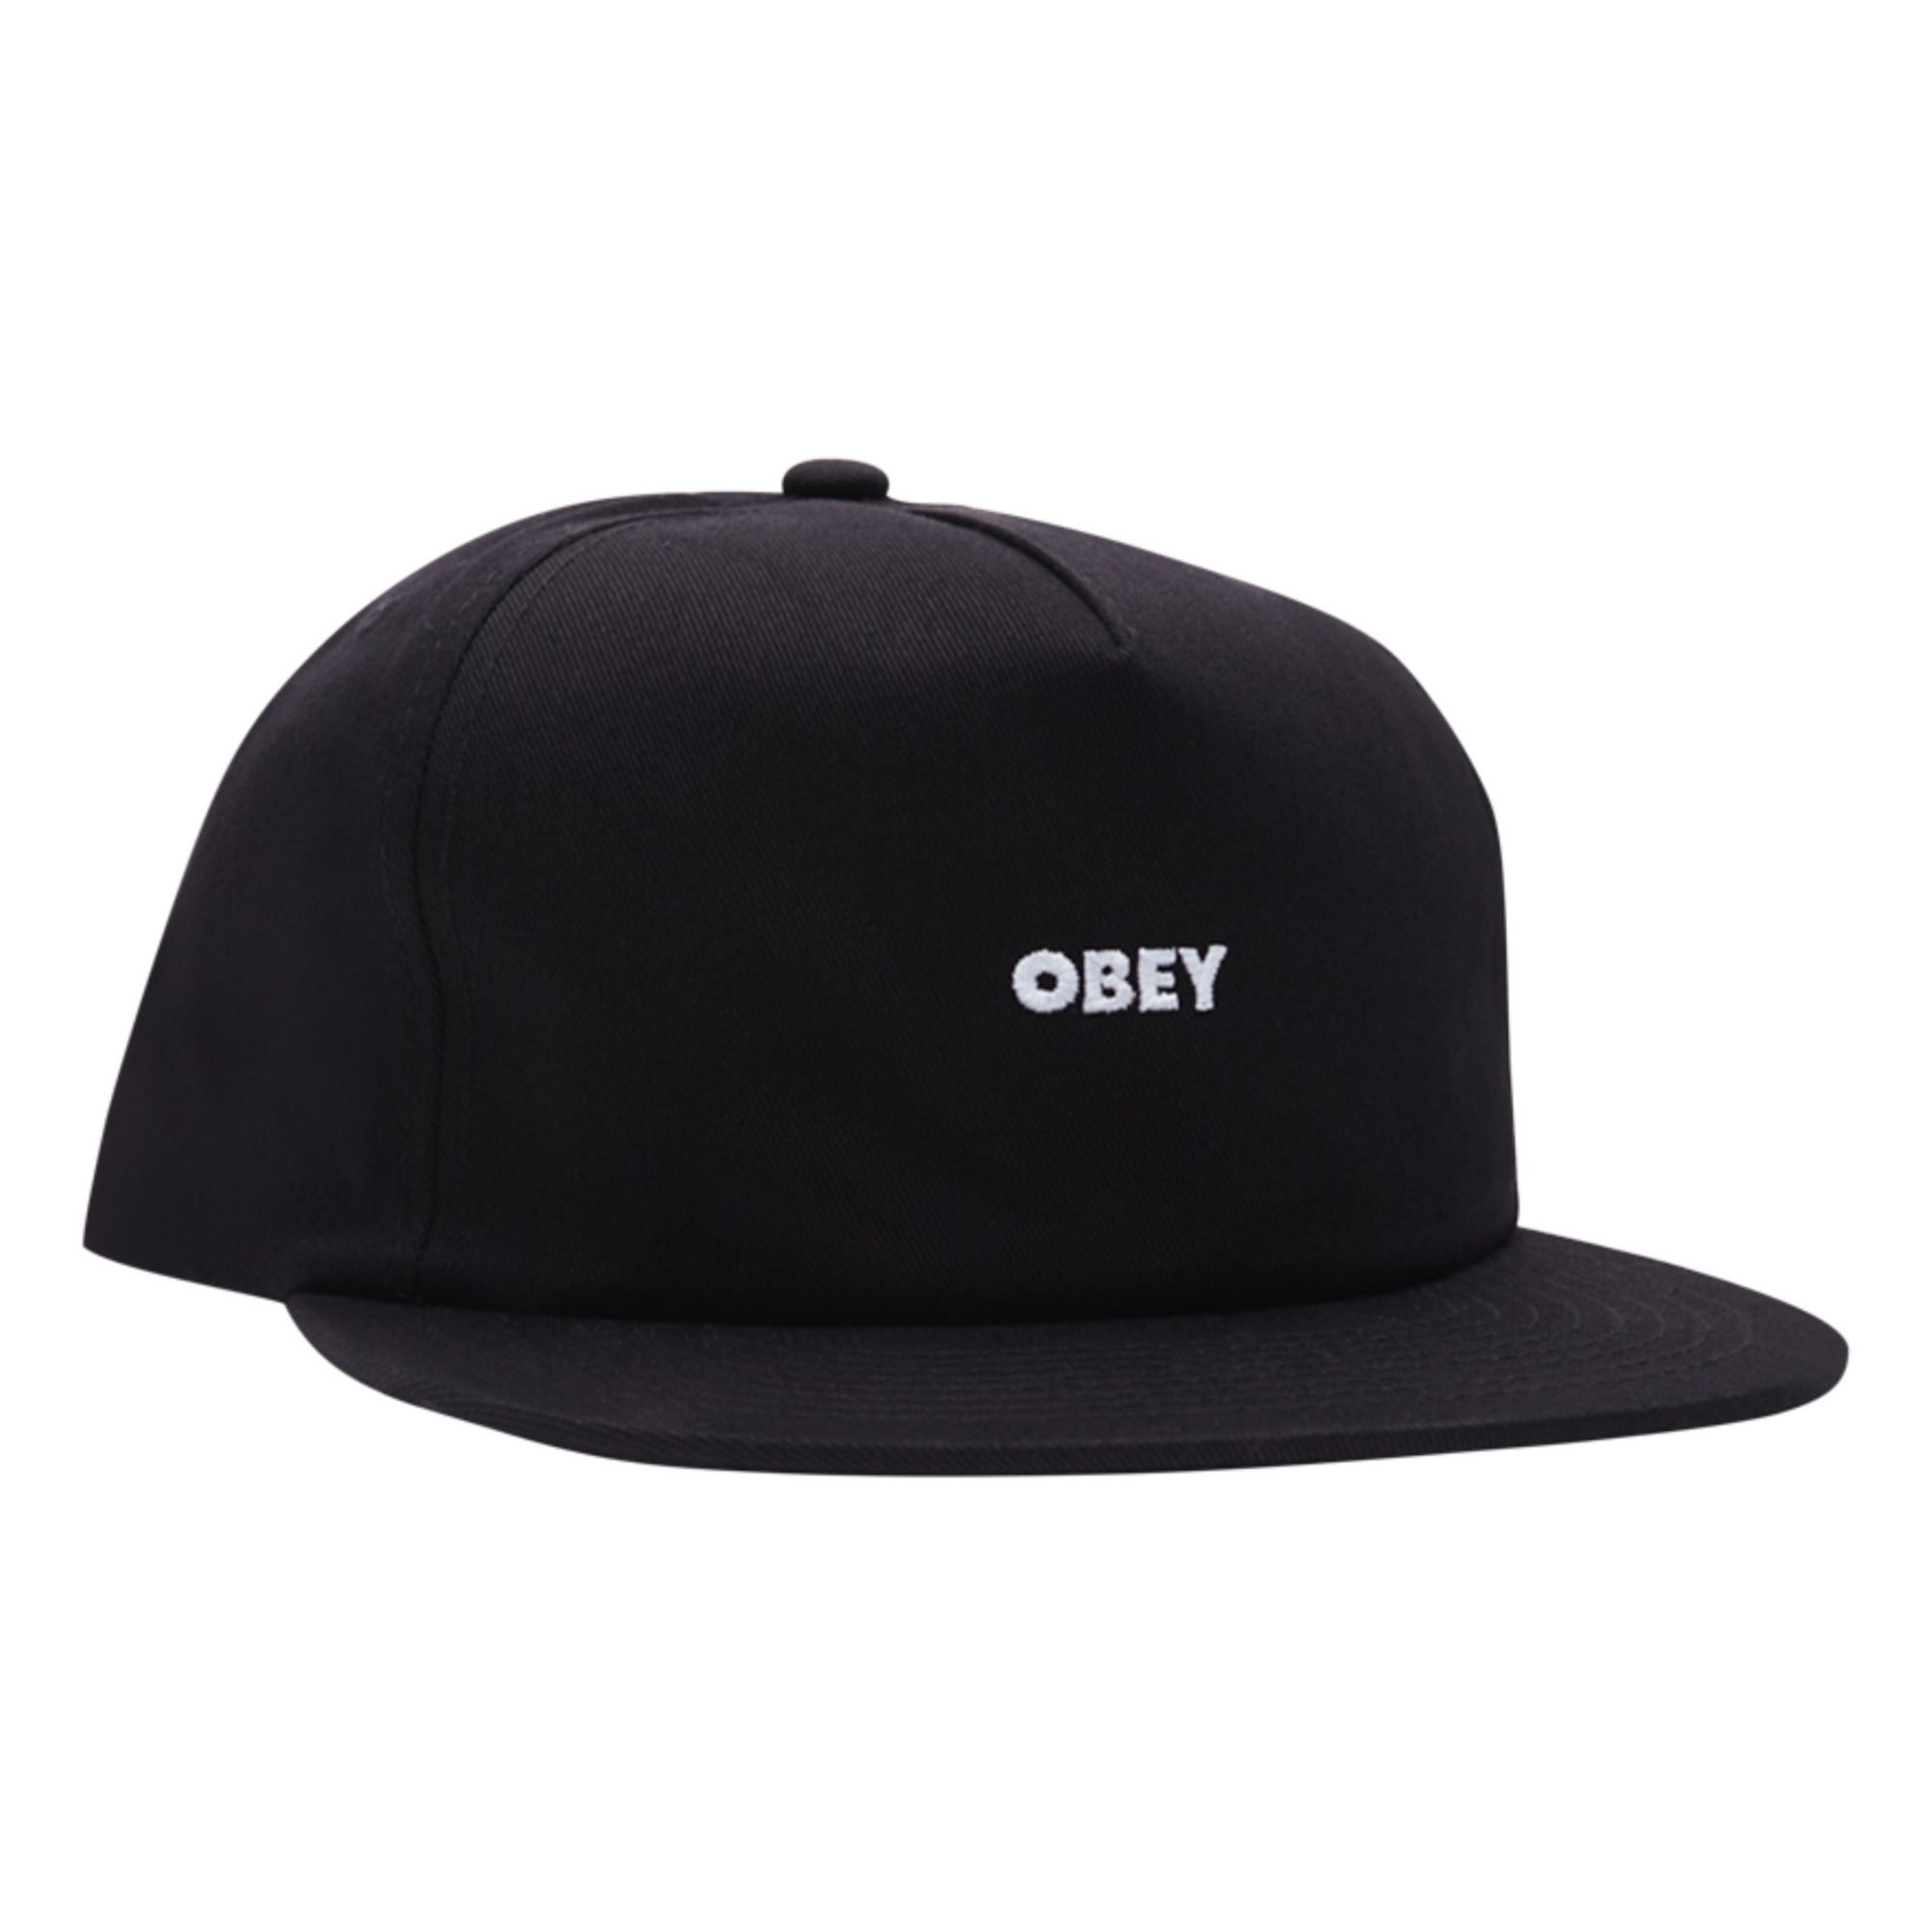 Obey - Casquette Logo - Homme - Noir